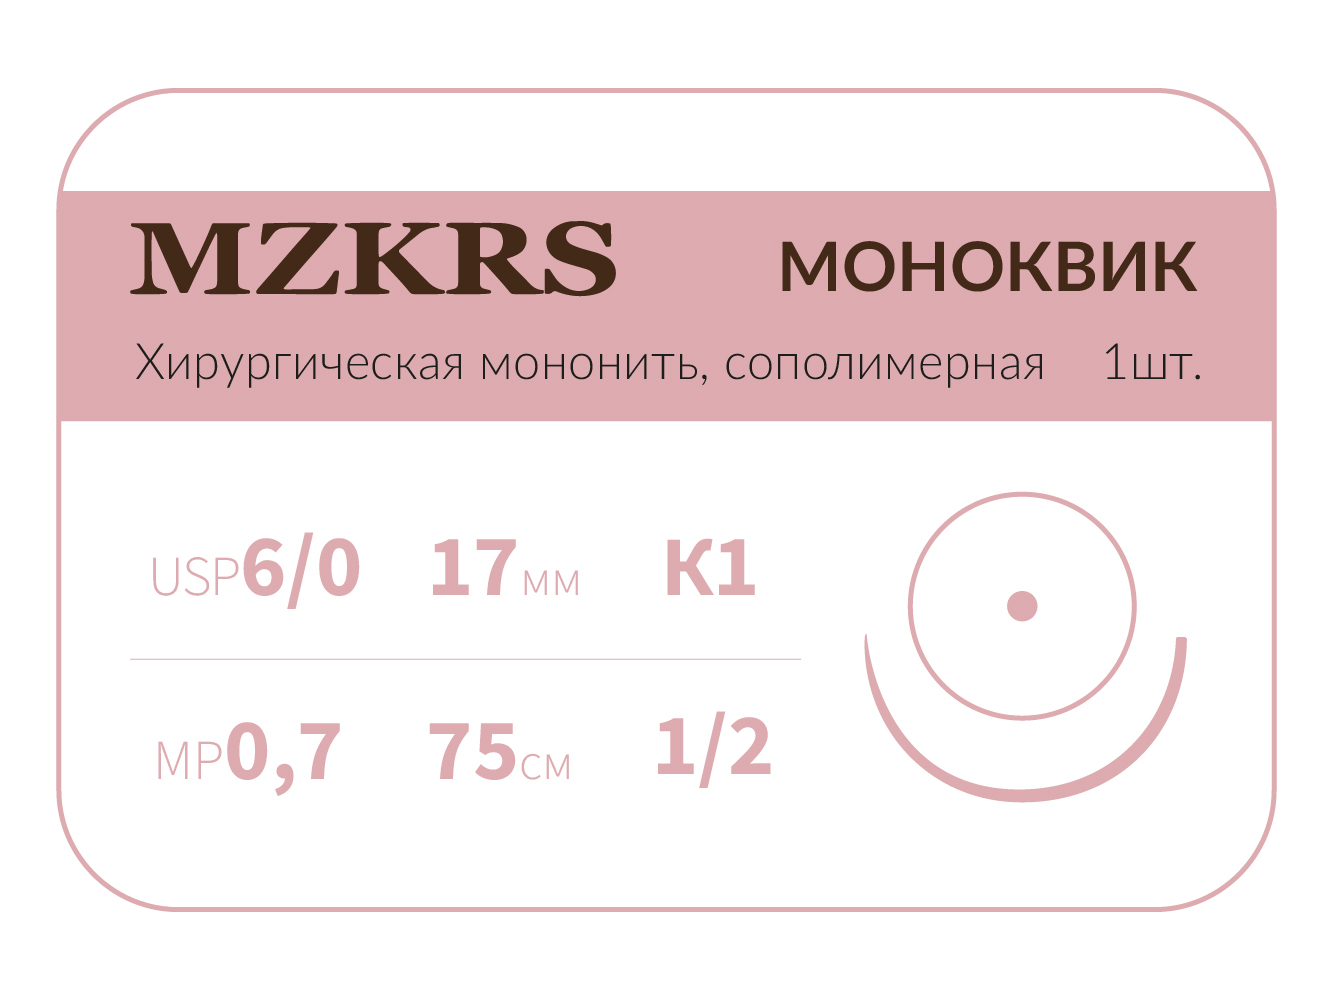 1712К1кол-Premium-6/0 (0,7)75  МОНК МОНОКВИК хирургическая мононить сополимерная, MZKRS (Россия)